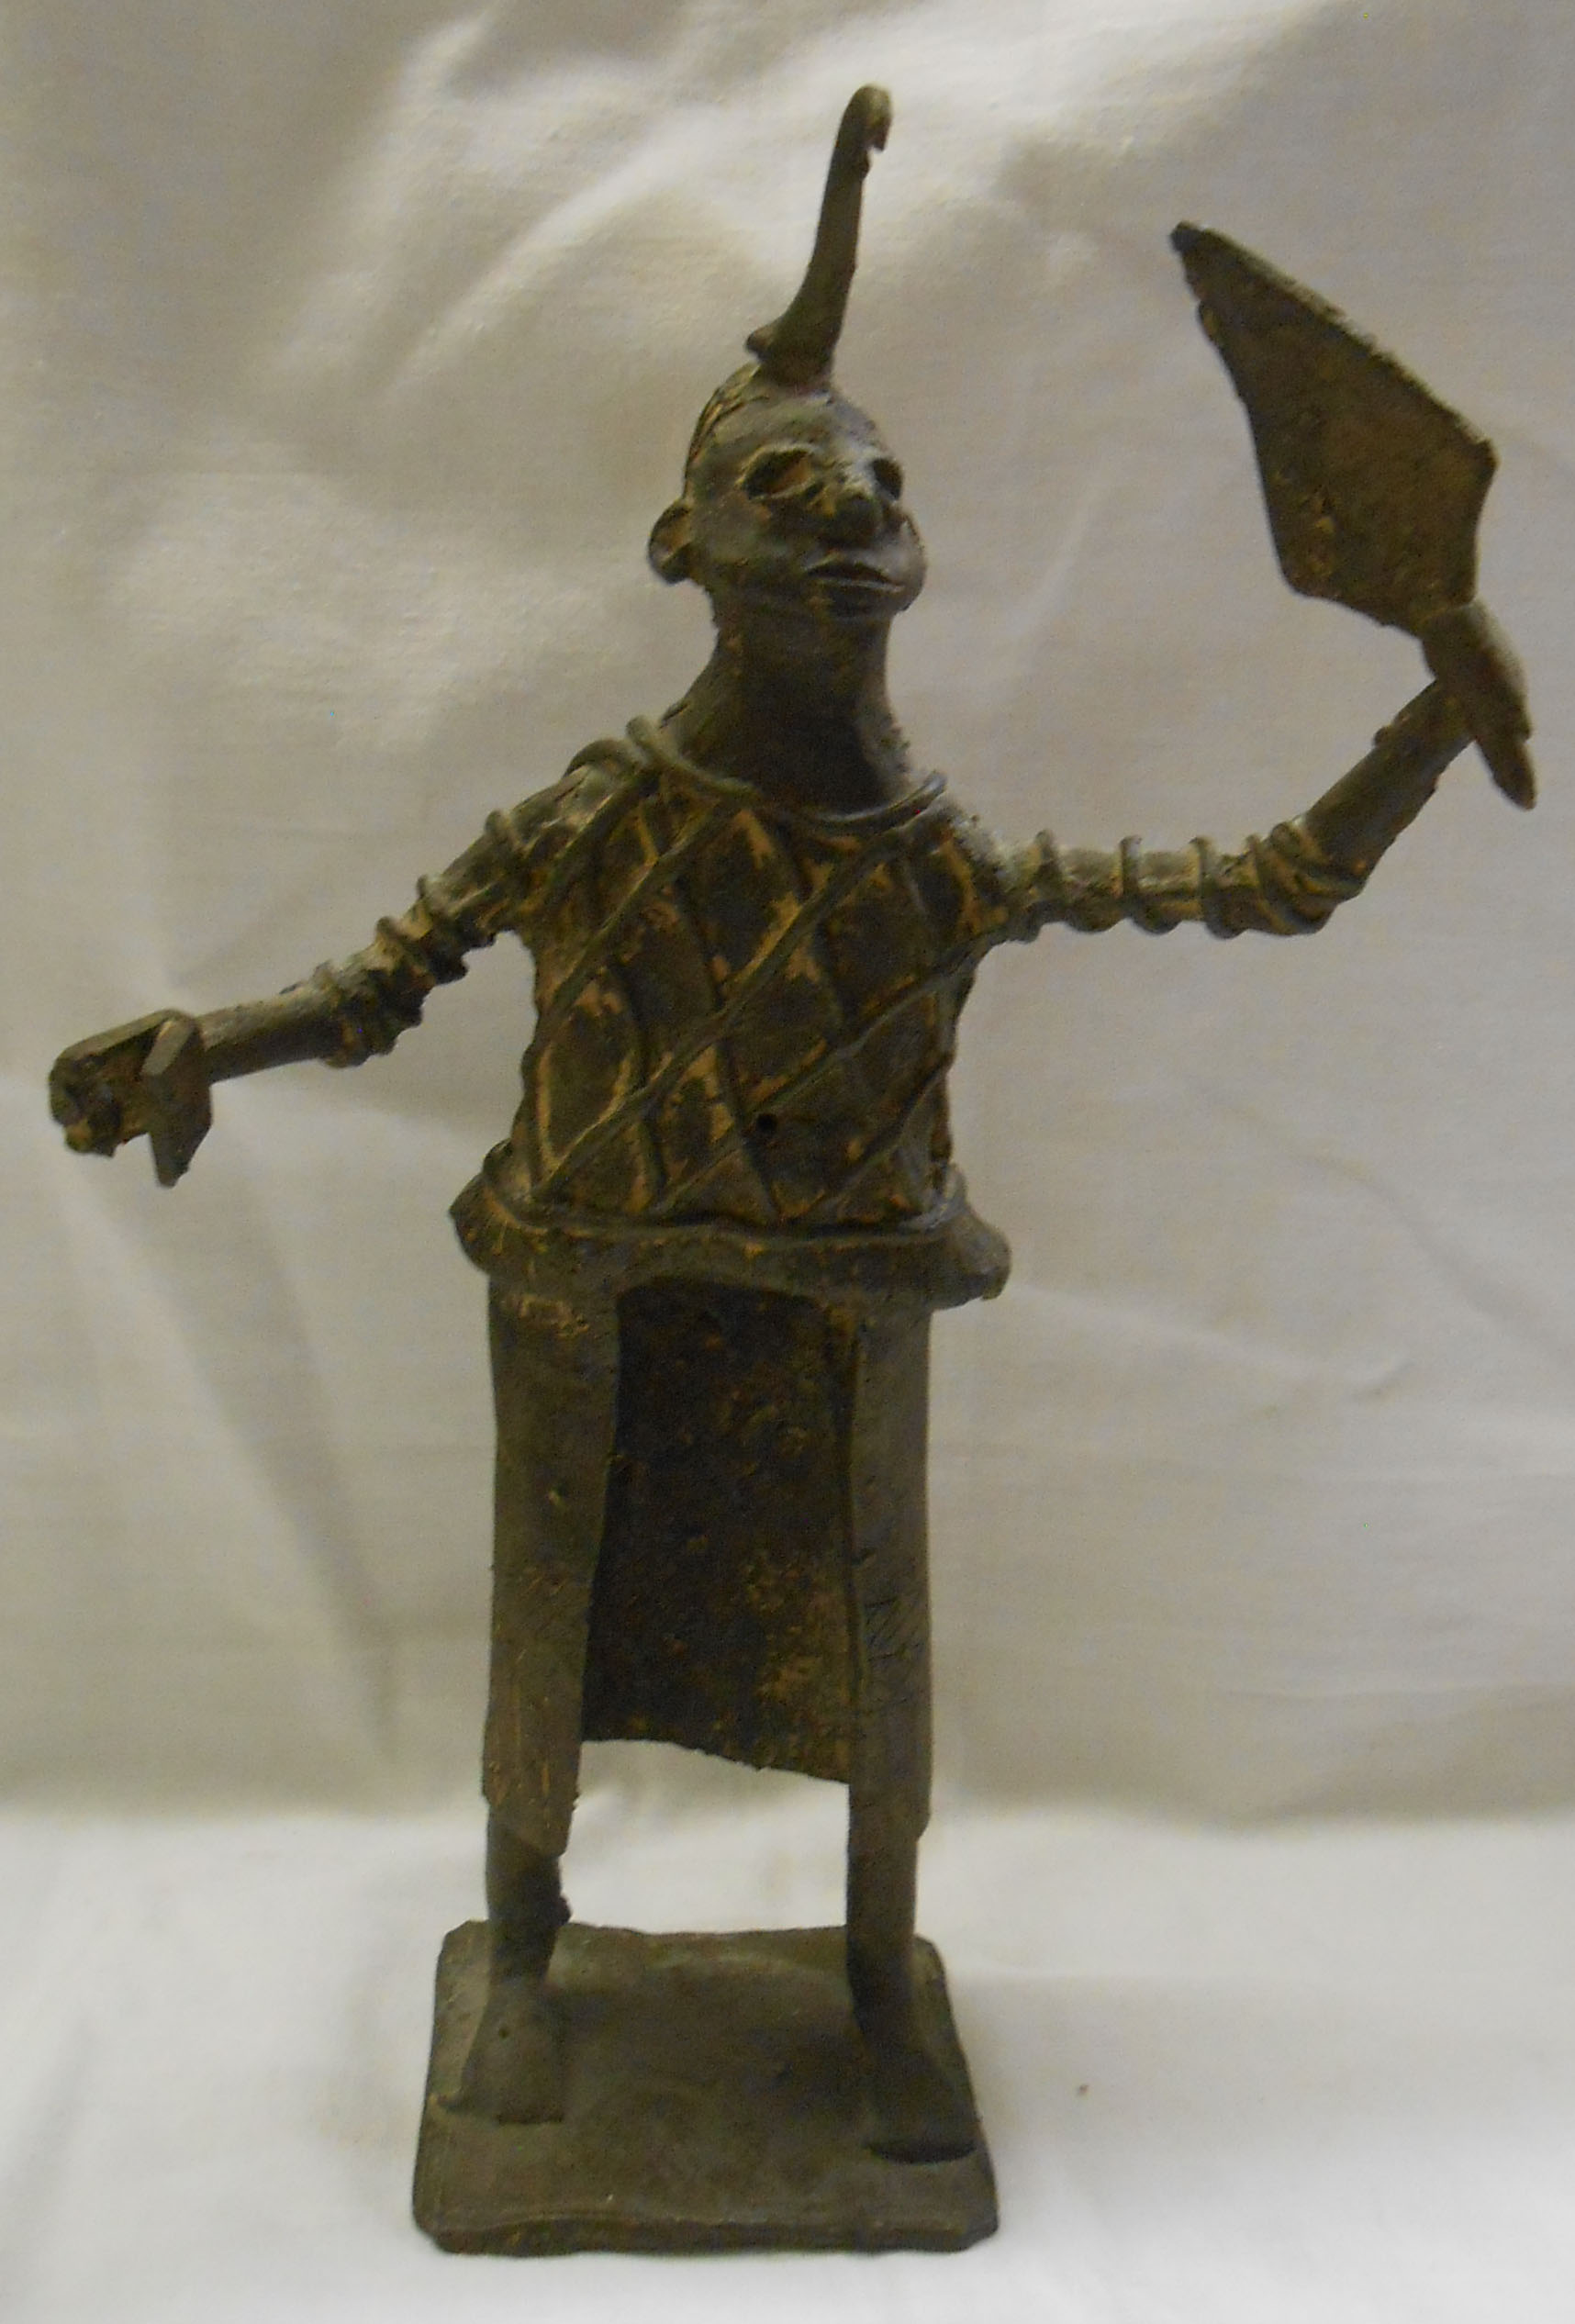 An African cast bronze figure depicting a man with horned headdress